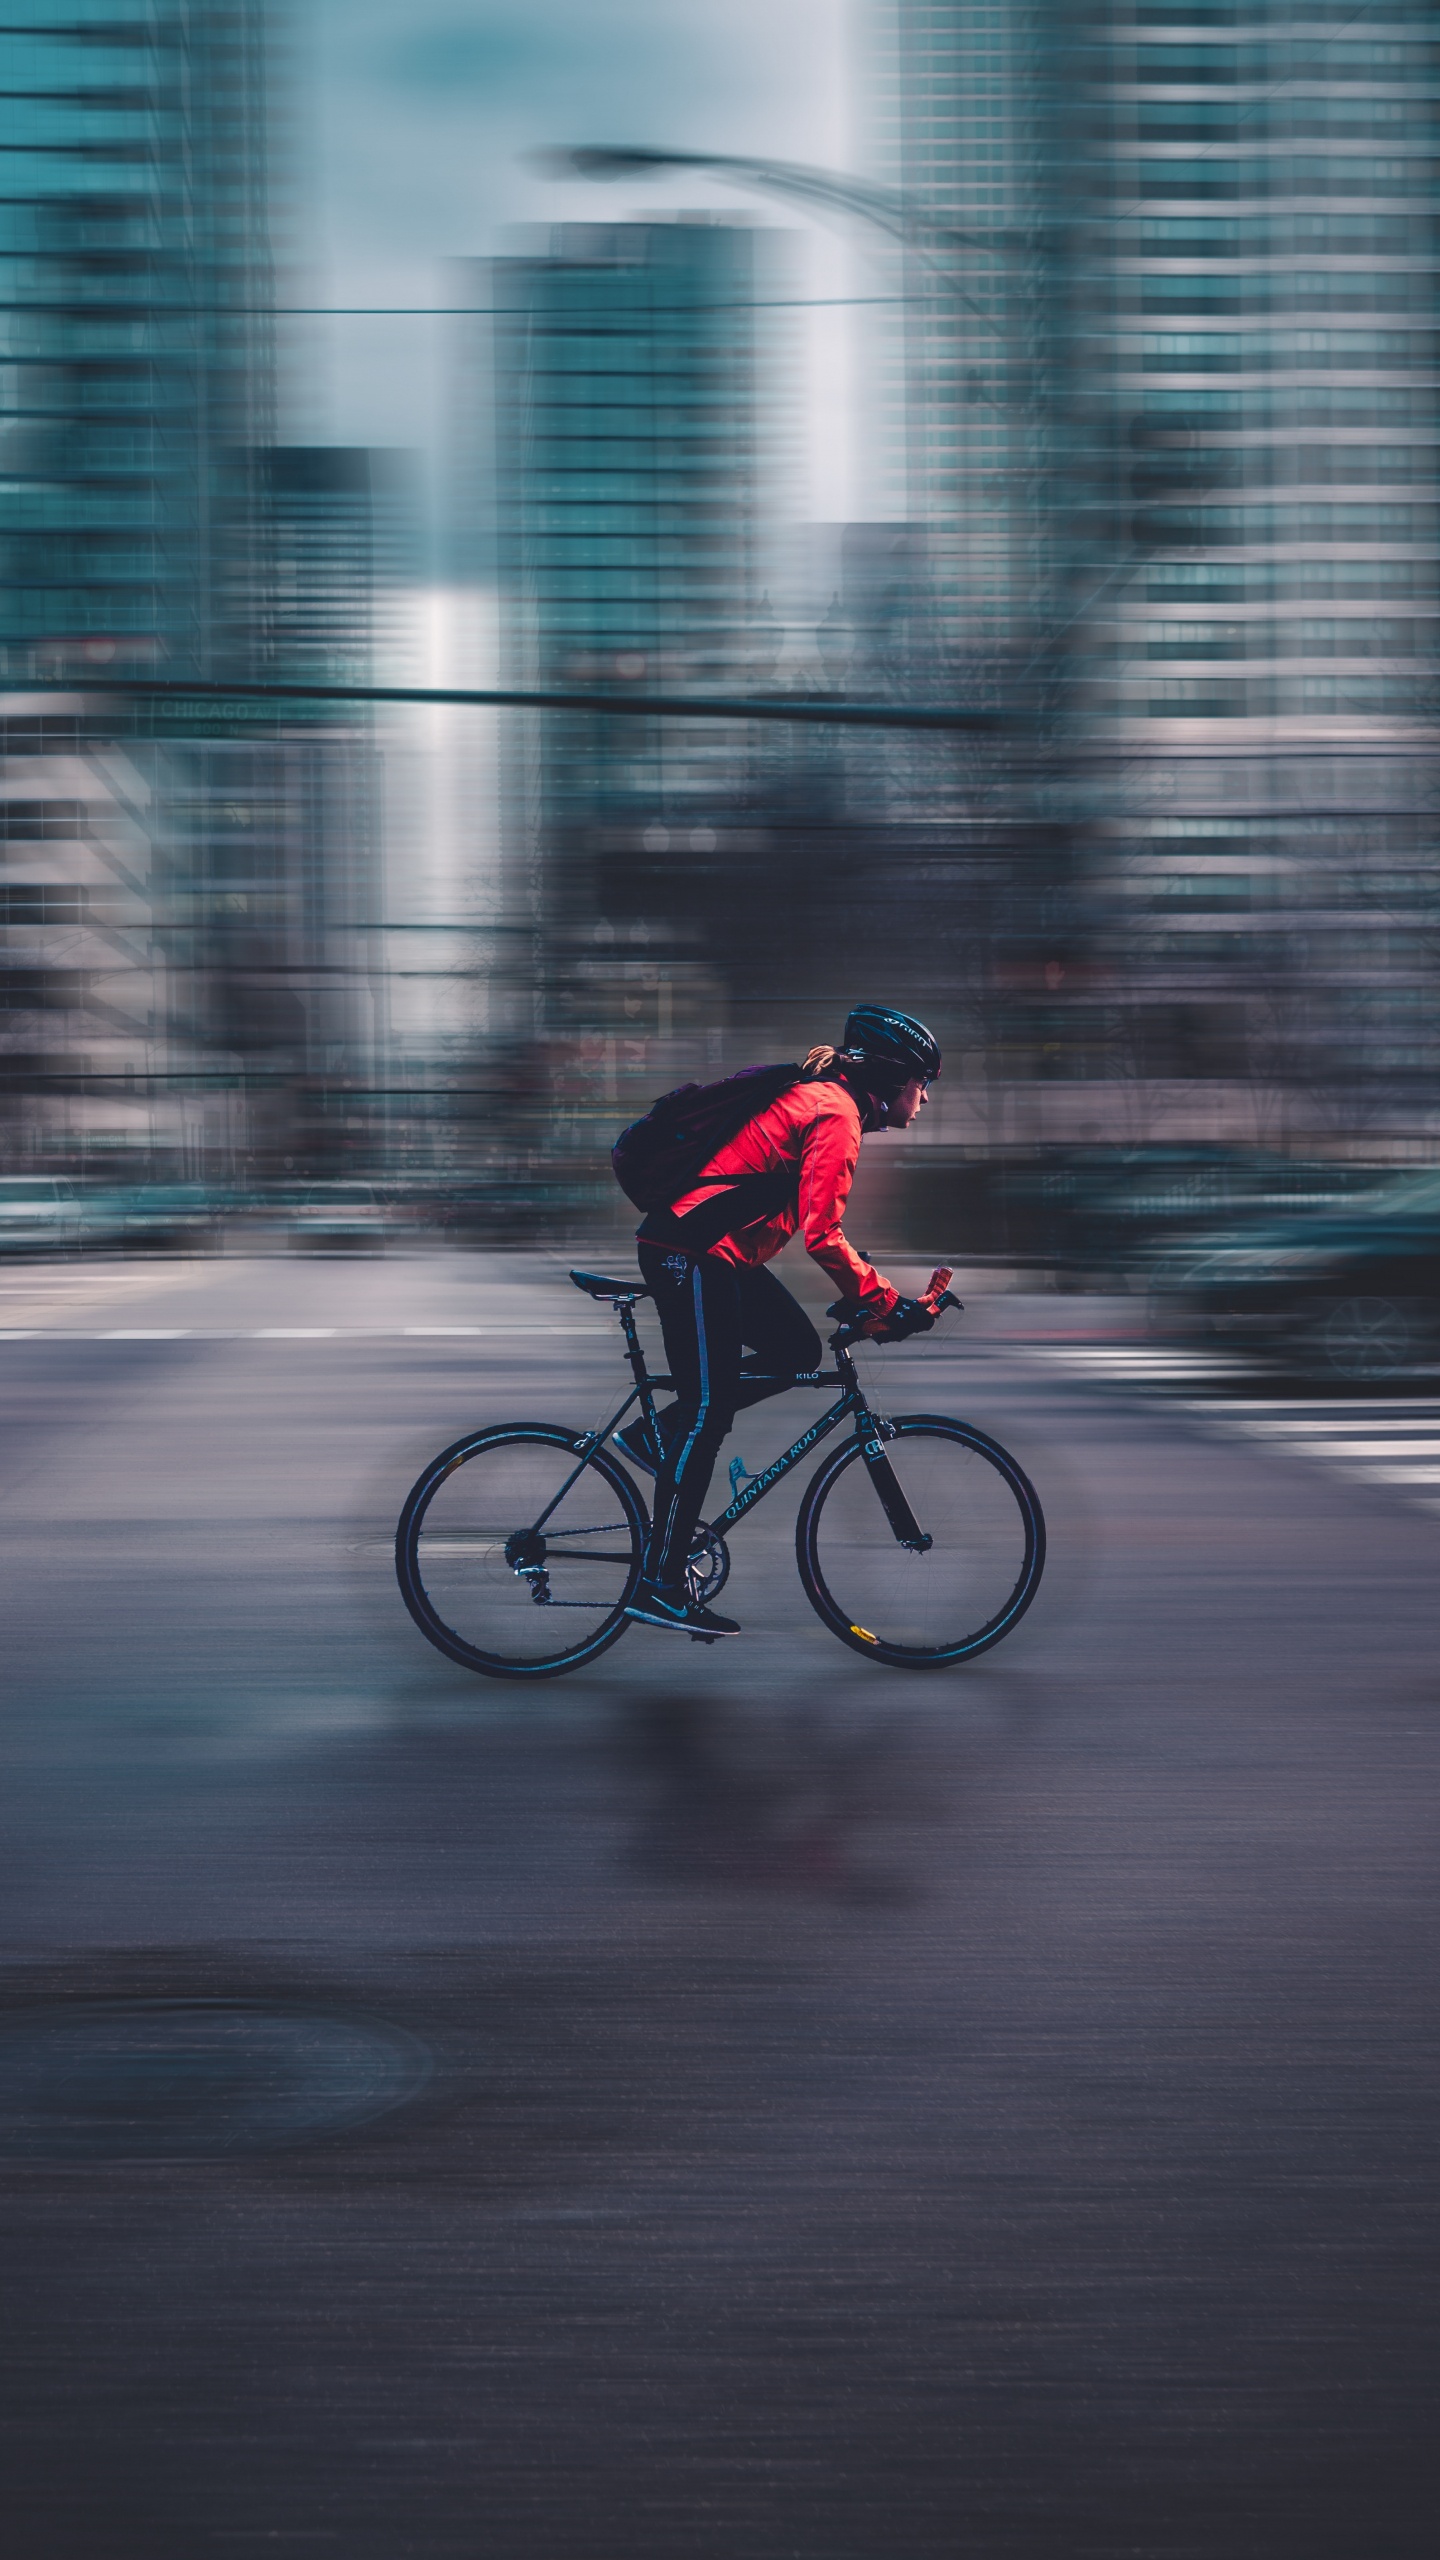 Hombre de Chaqueta Roja Montando Bicicleta en la Carretera Durante el Día. Wallpaper in 1440x2560 Resolution